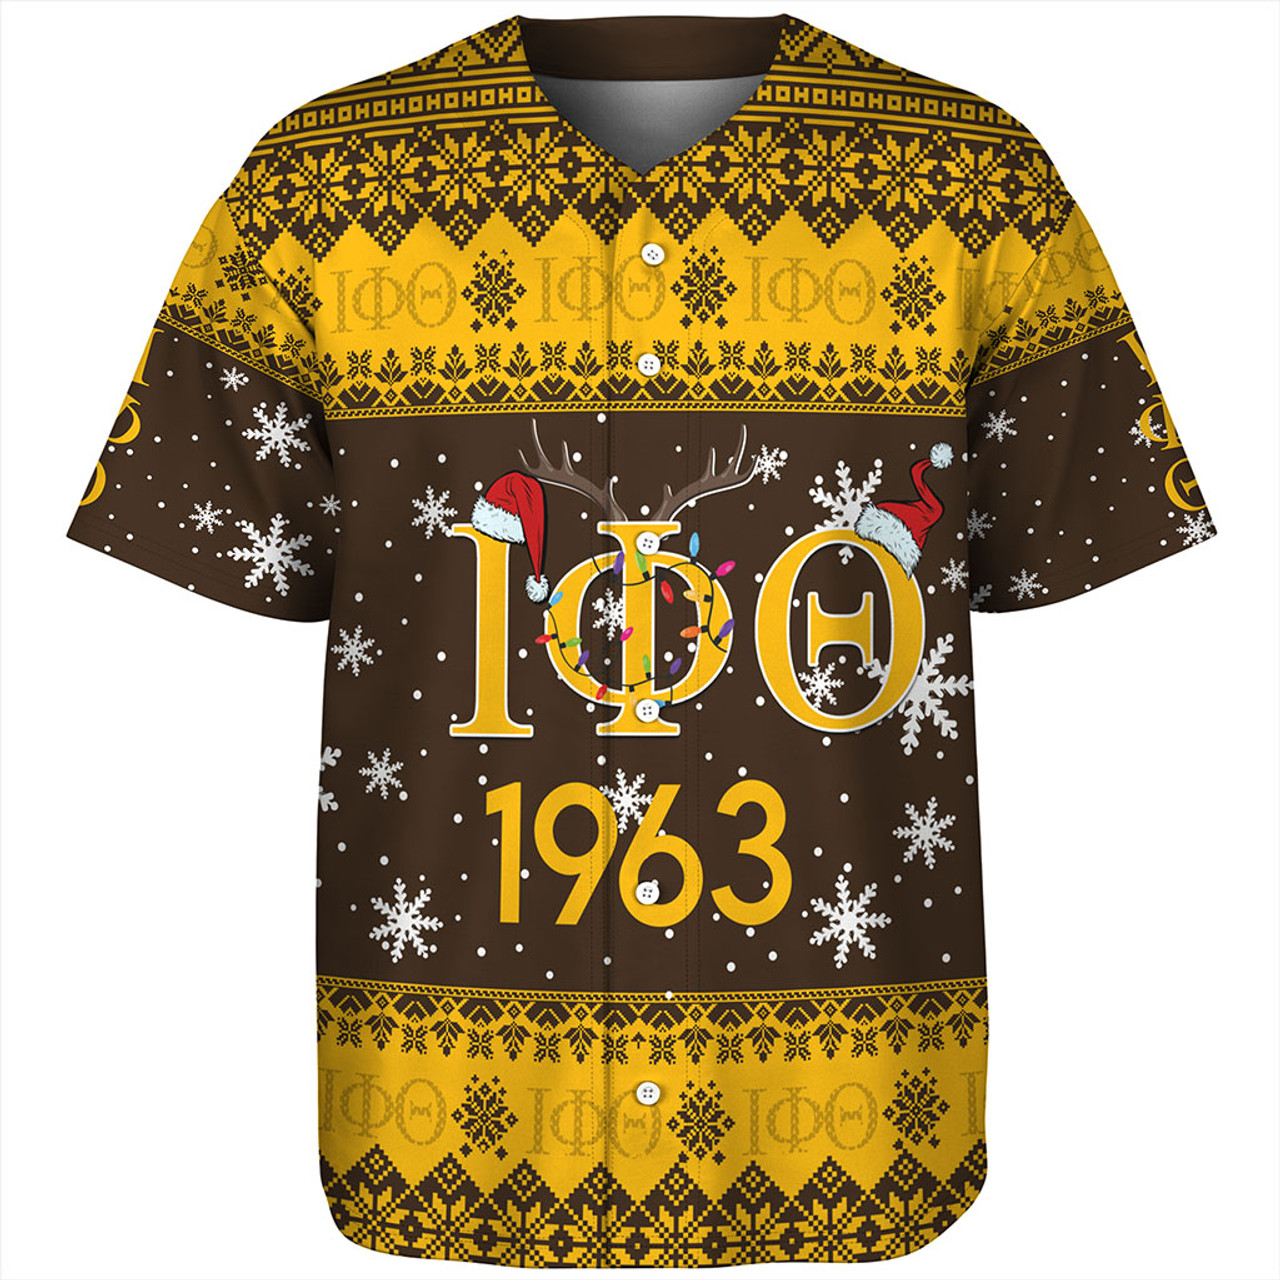 Iota Phi Theta Baseball Shirt Christmas Symbols Design